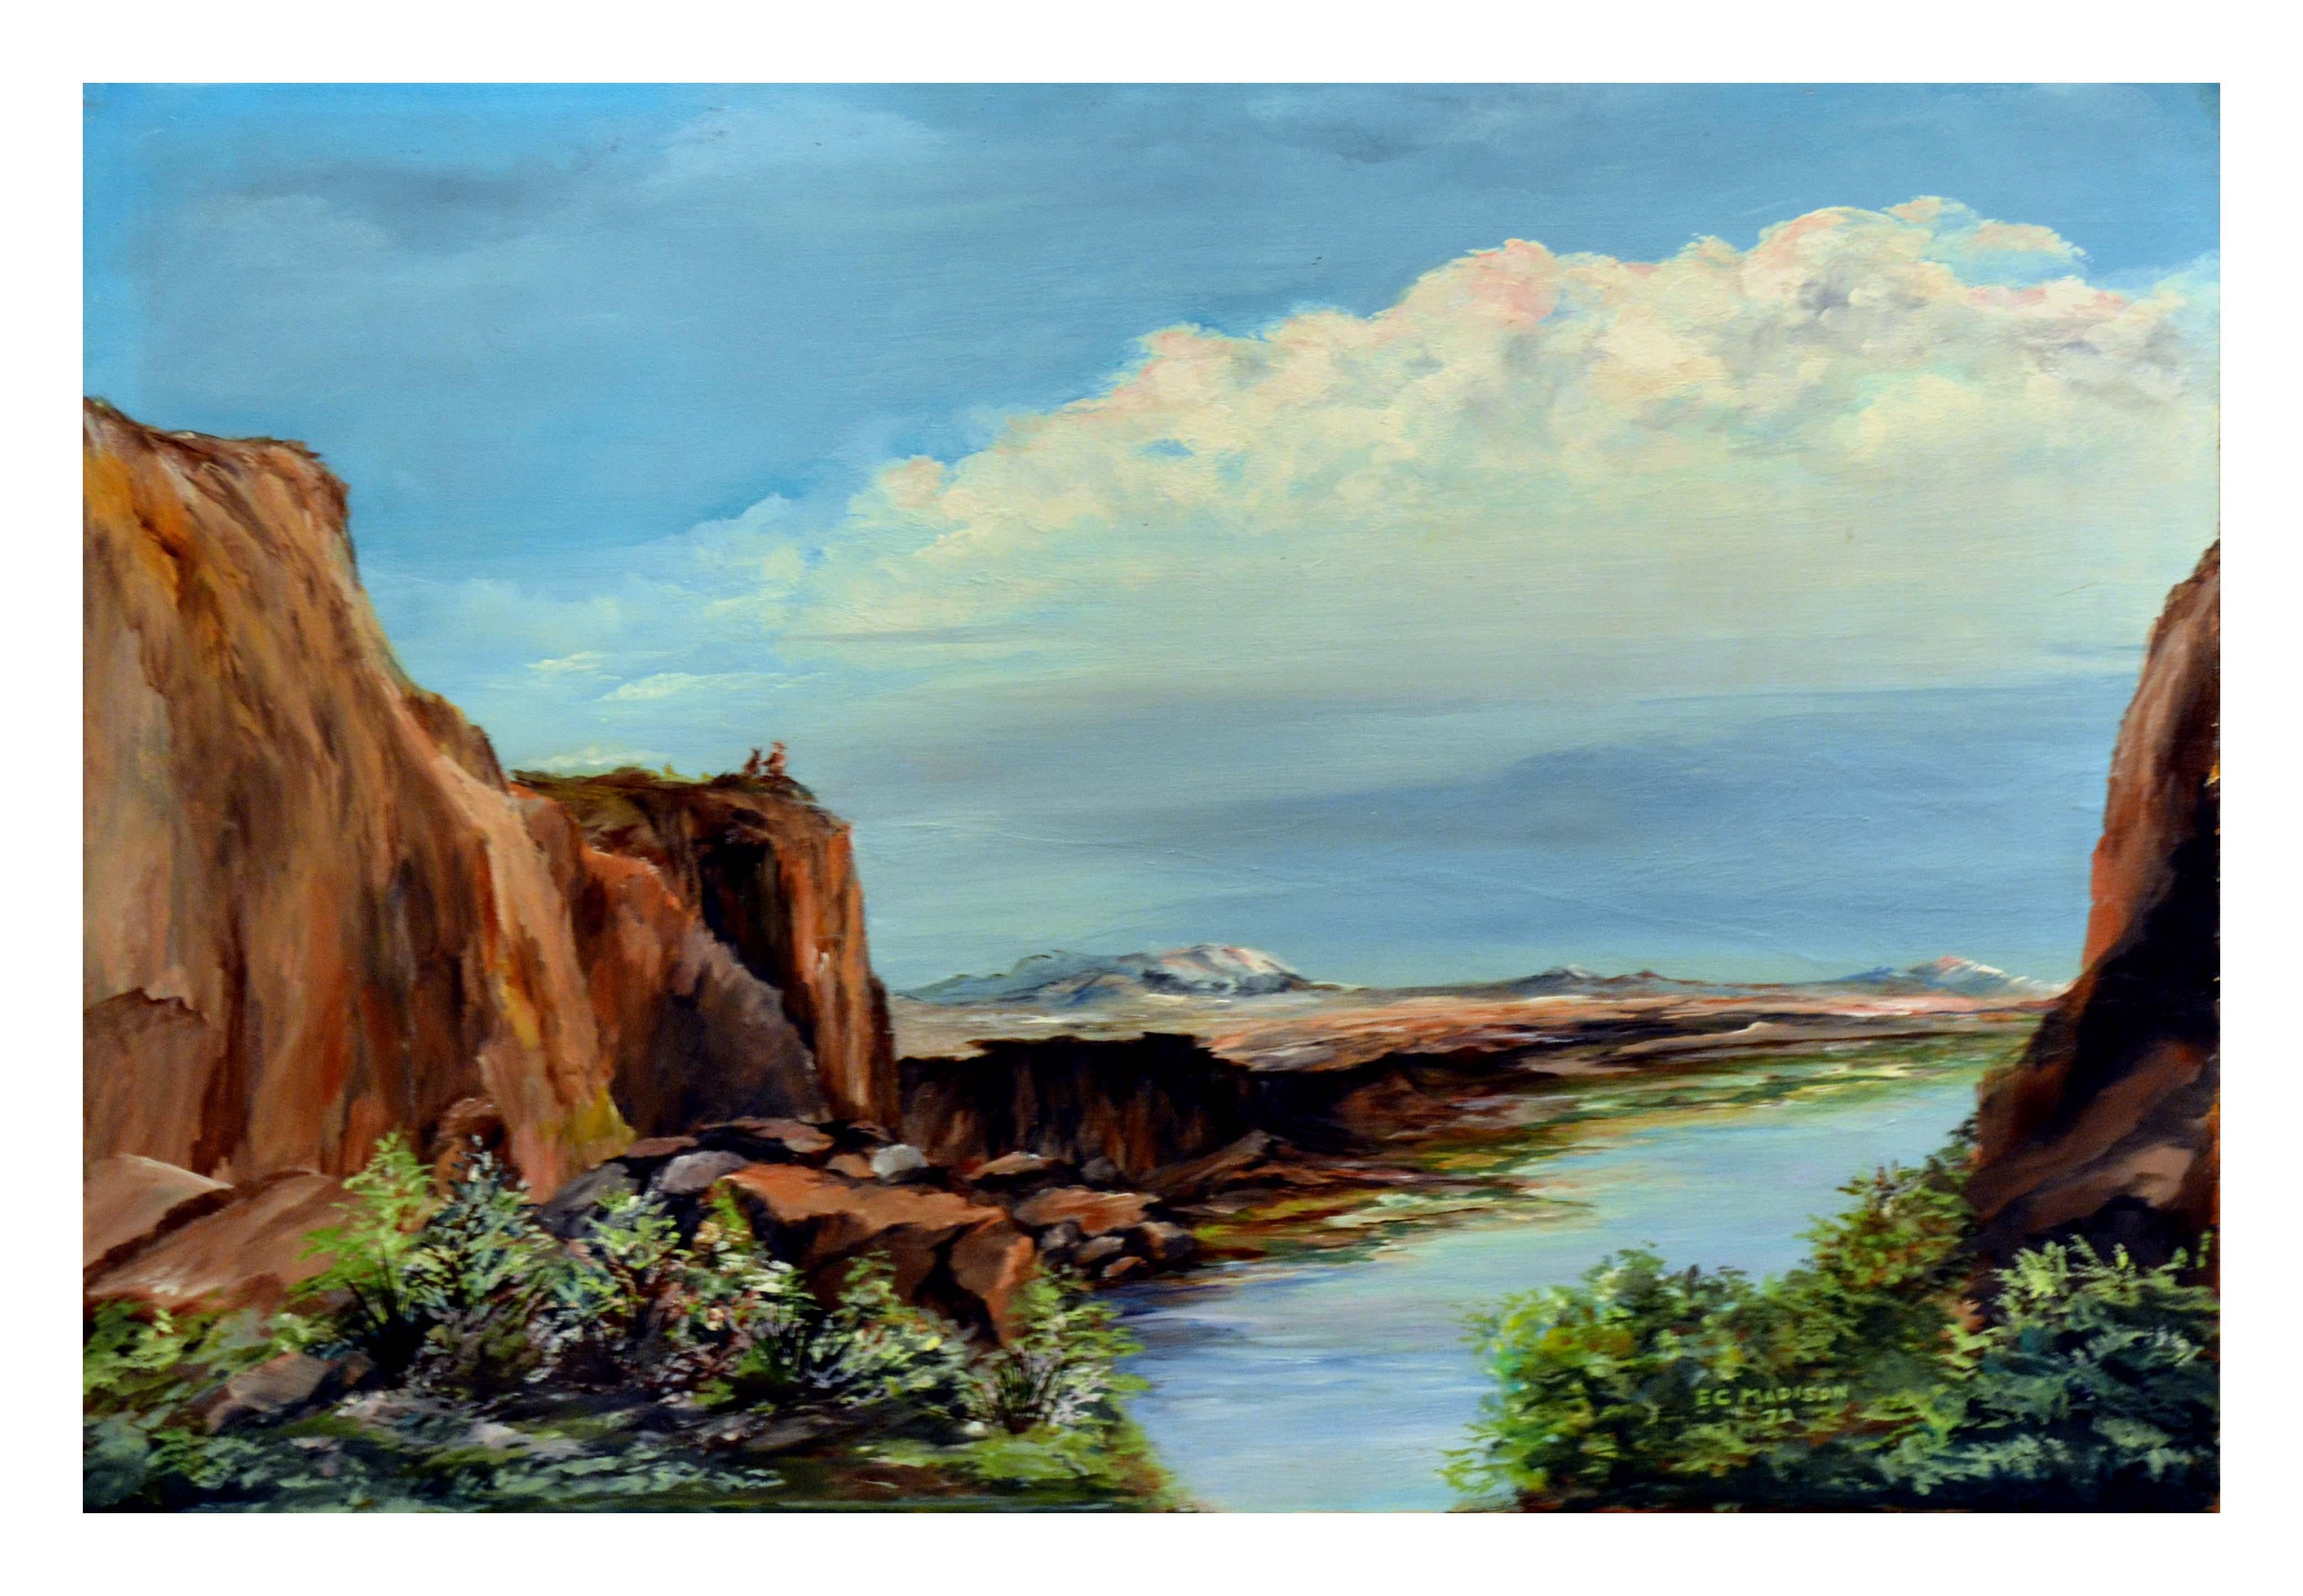 Baja California Ansicht, Vintage 1970's Coastal Landscape von E.C. Madison

Wunderschöne Landschaft der Baja California von E.C. Madison (Amerikaner, 20. Jahrhundert), 1972. Diese weitläufige Küstenlandschaft wird von kleinen Figuren unterbrochen,